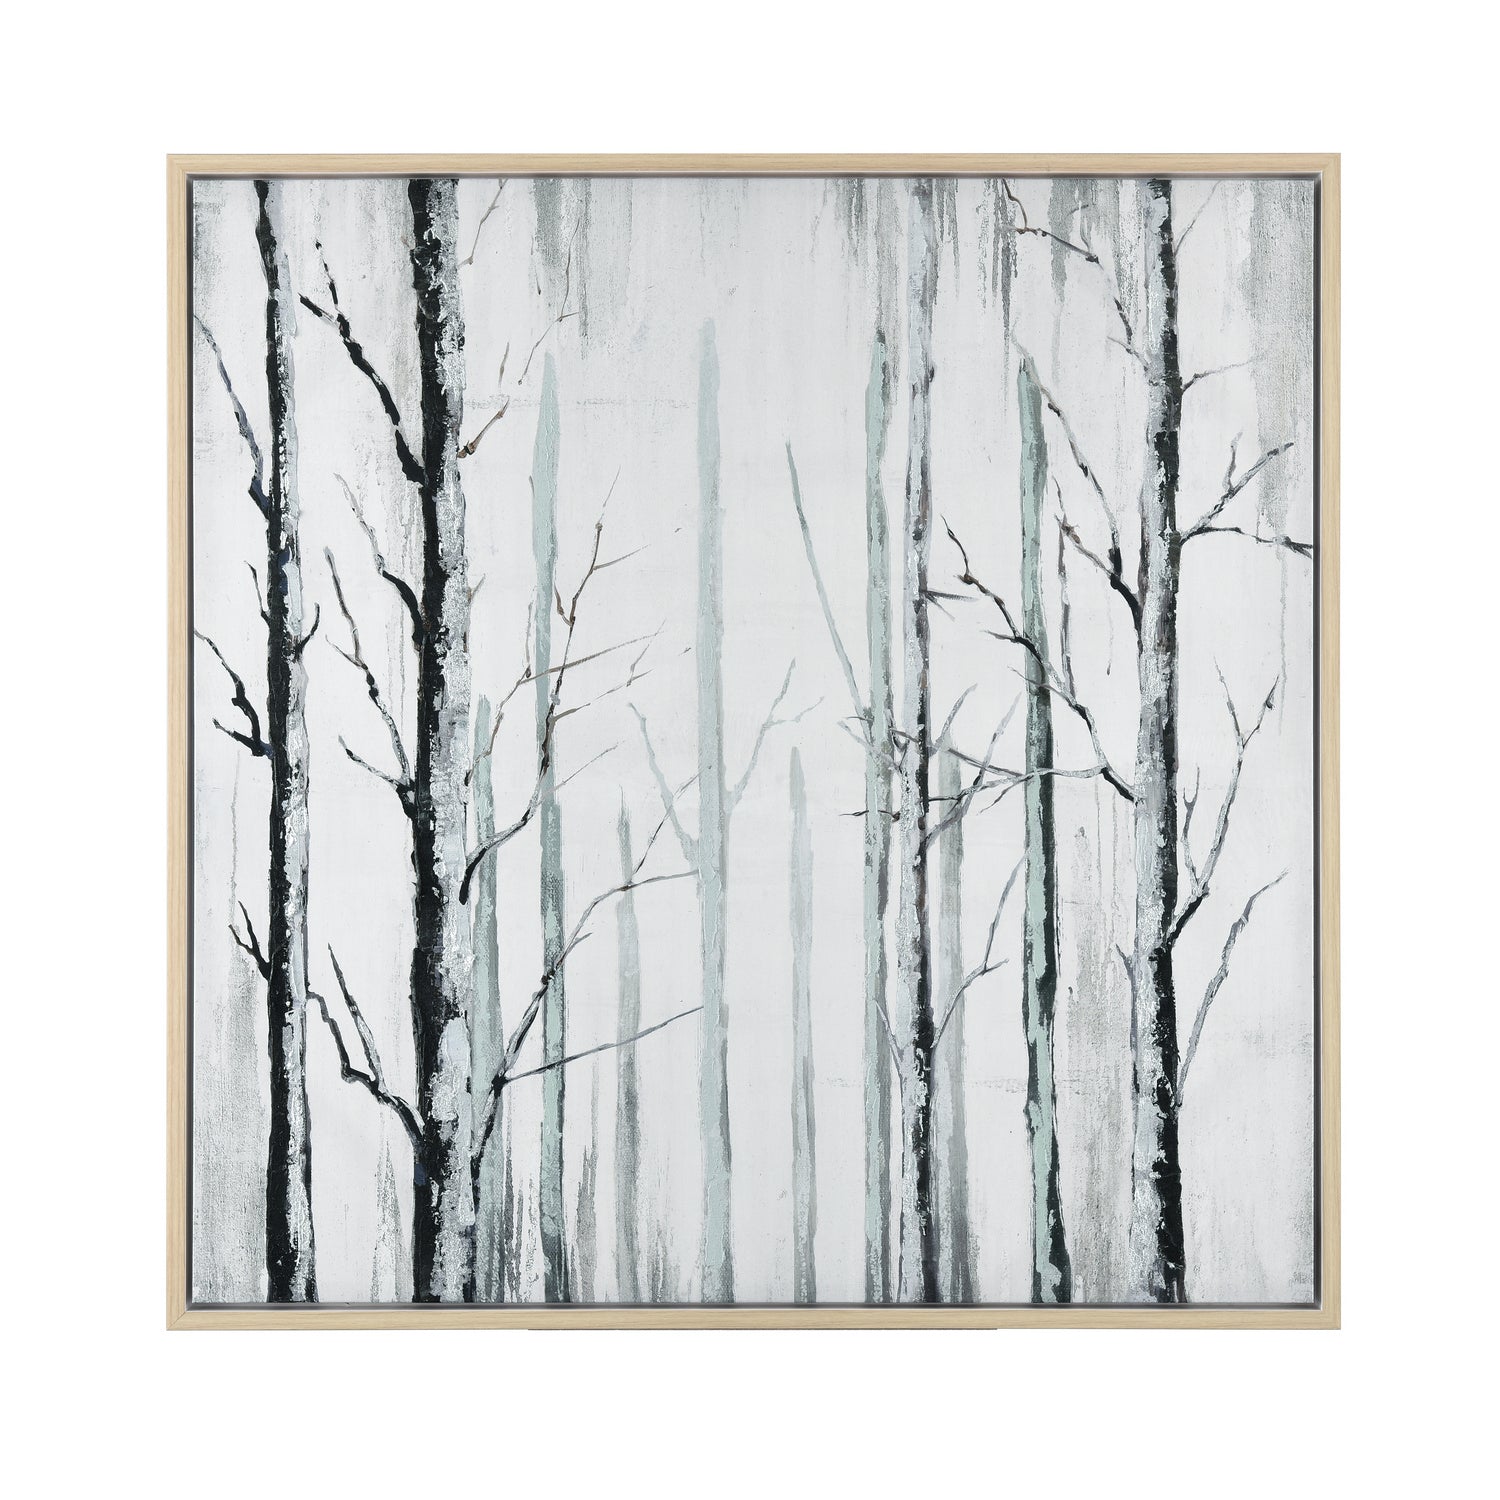 ELK Home - S0026-9303 - Wall Art - Jordan Forest - Off White